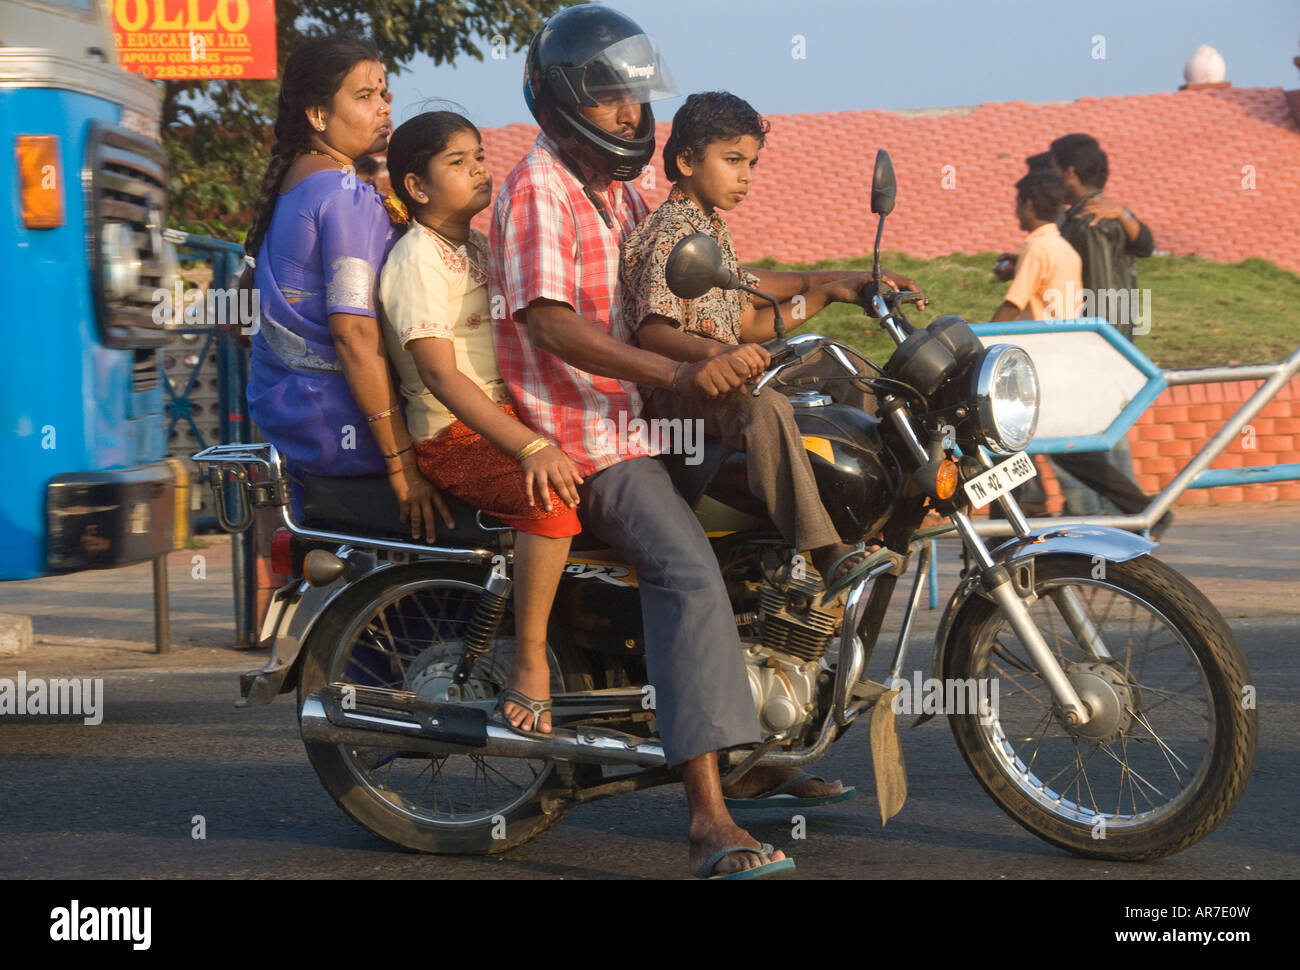 Eine indische Familie auf einem Motorrad in Indien. Ratan Tata hat gesagt, da ganze Famiies auf einem Fahrrad seine Inspiration für den Nano war Stockfoto